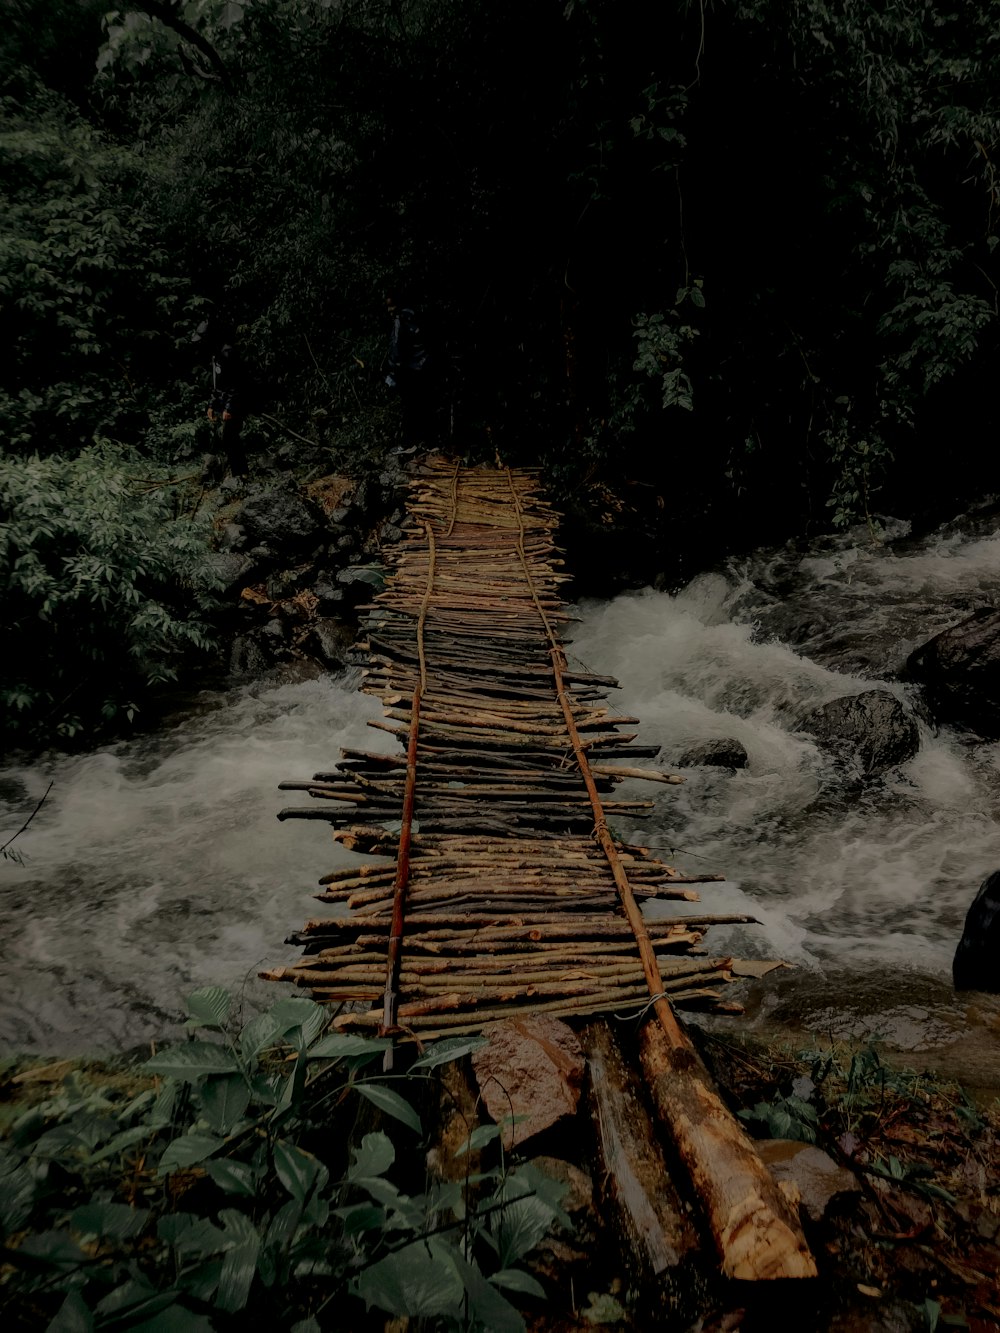 a wooden bridge over a river